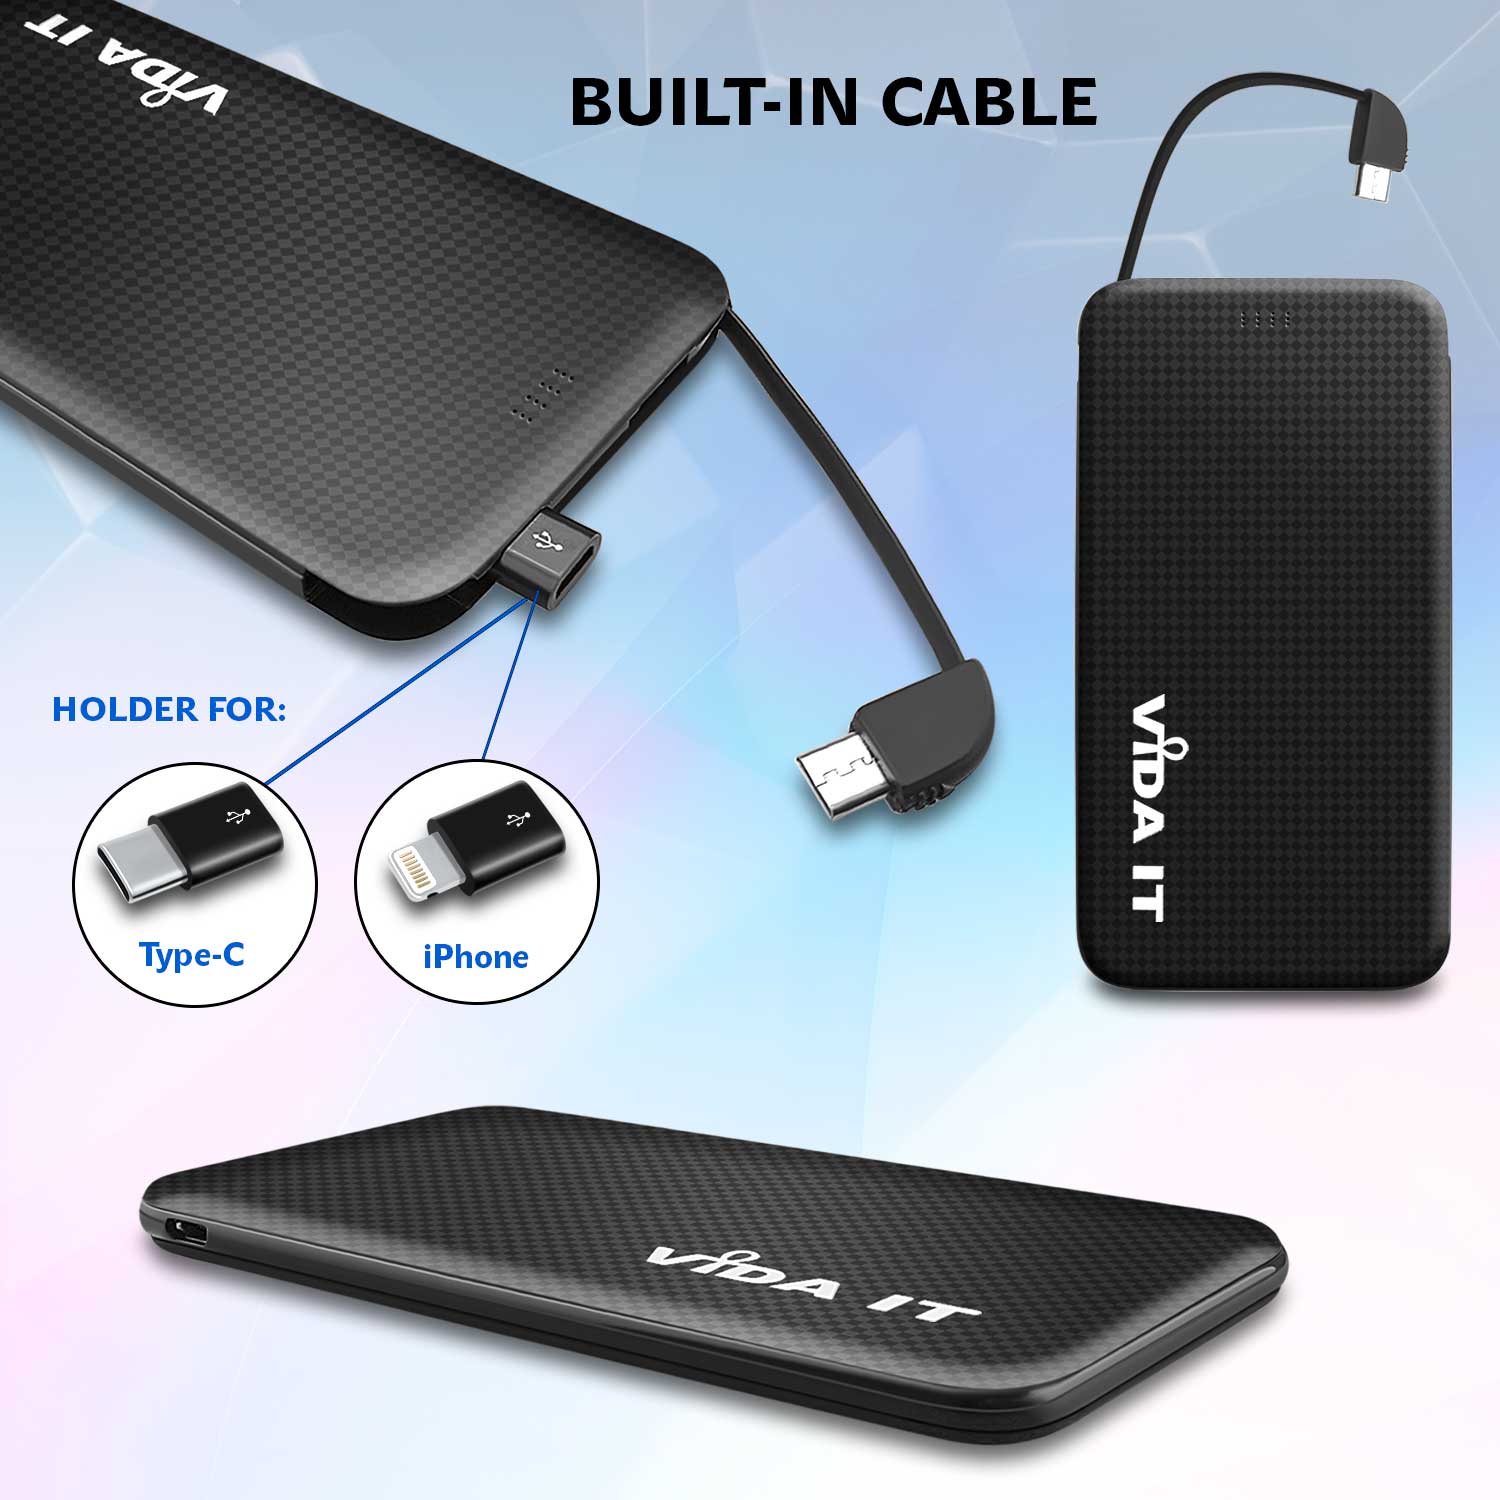 Tragbare Akku Extern PowerBank 5000mAh Ladegerät mit einem integrierten Micro-USB Kabel und iPhone Lightning und USB Typ-C Adaptern für handy schwarz